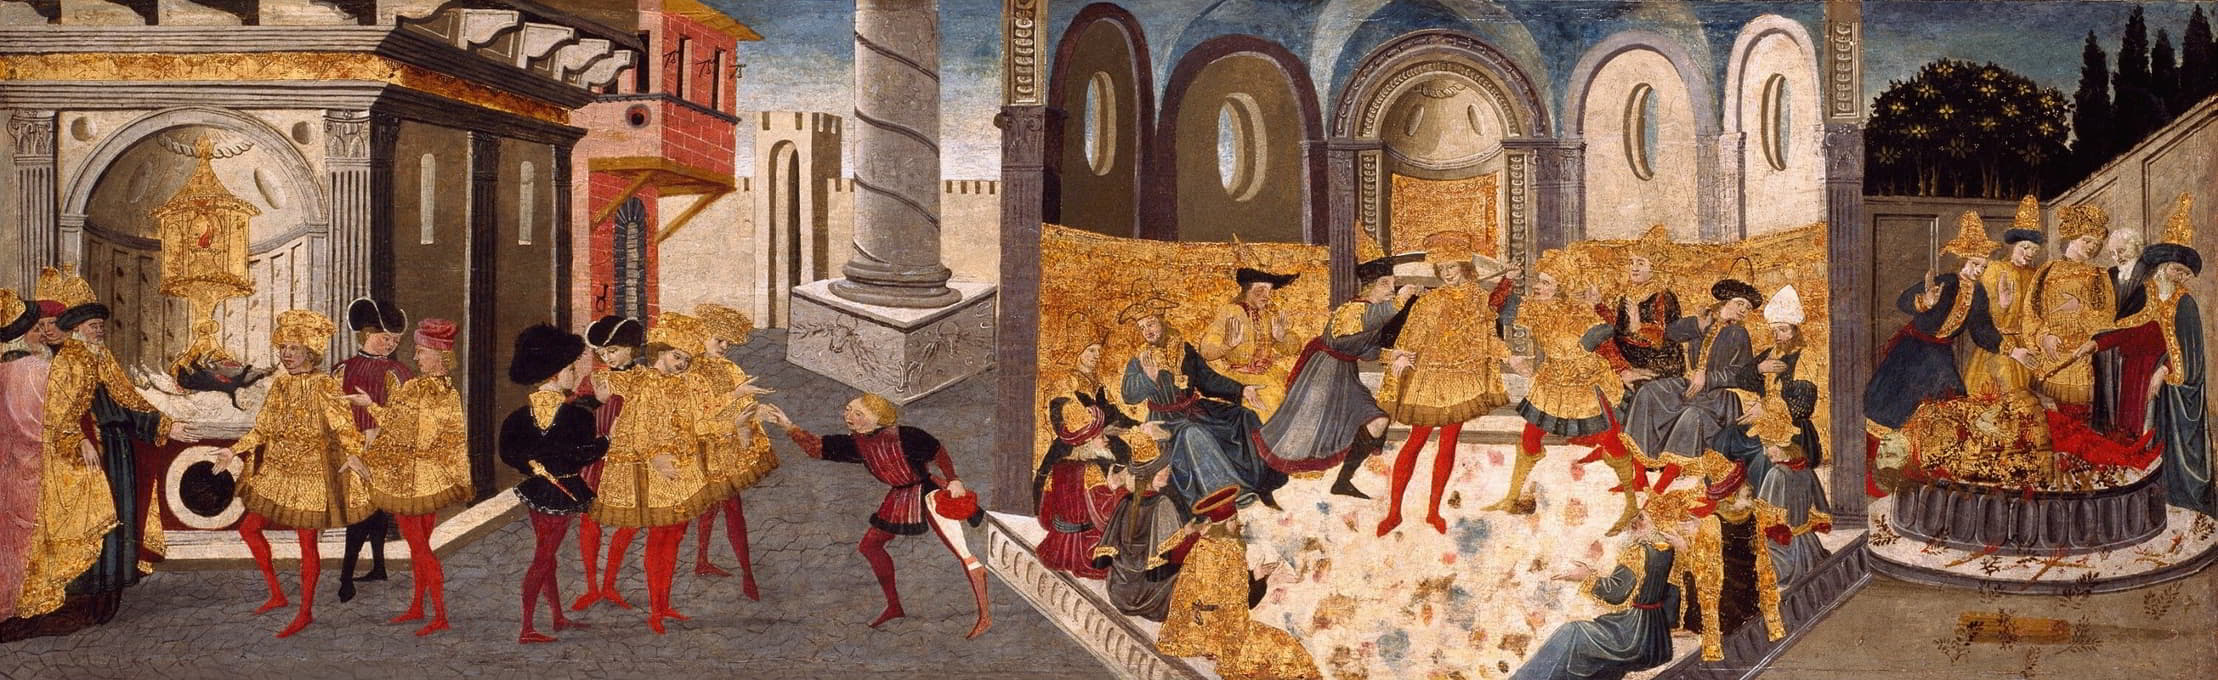 朱利叶斯·凯撒的暗杀和葬礼